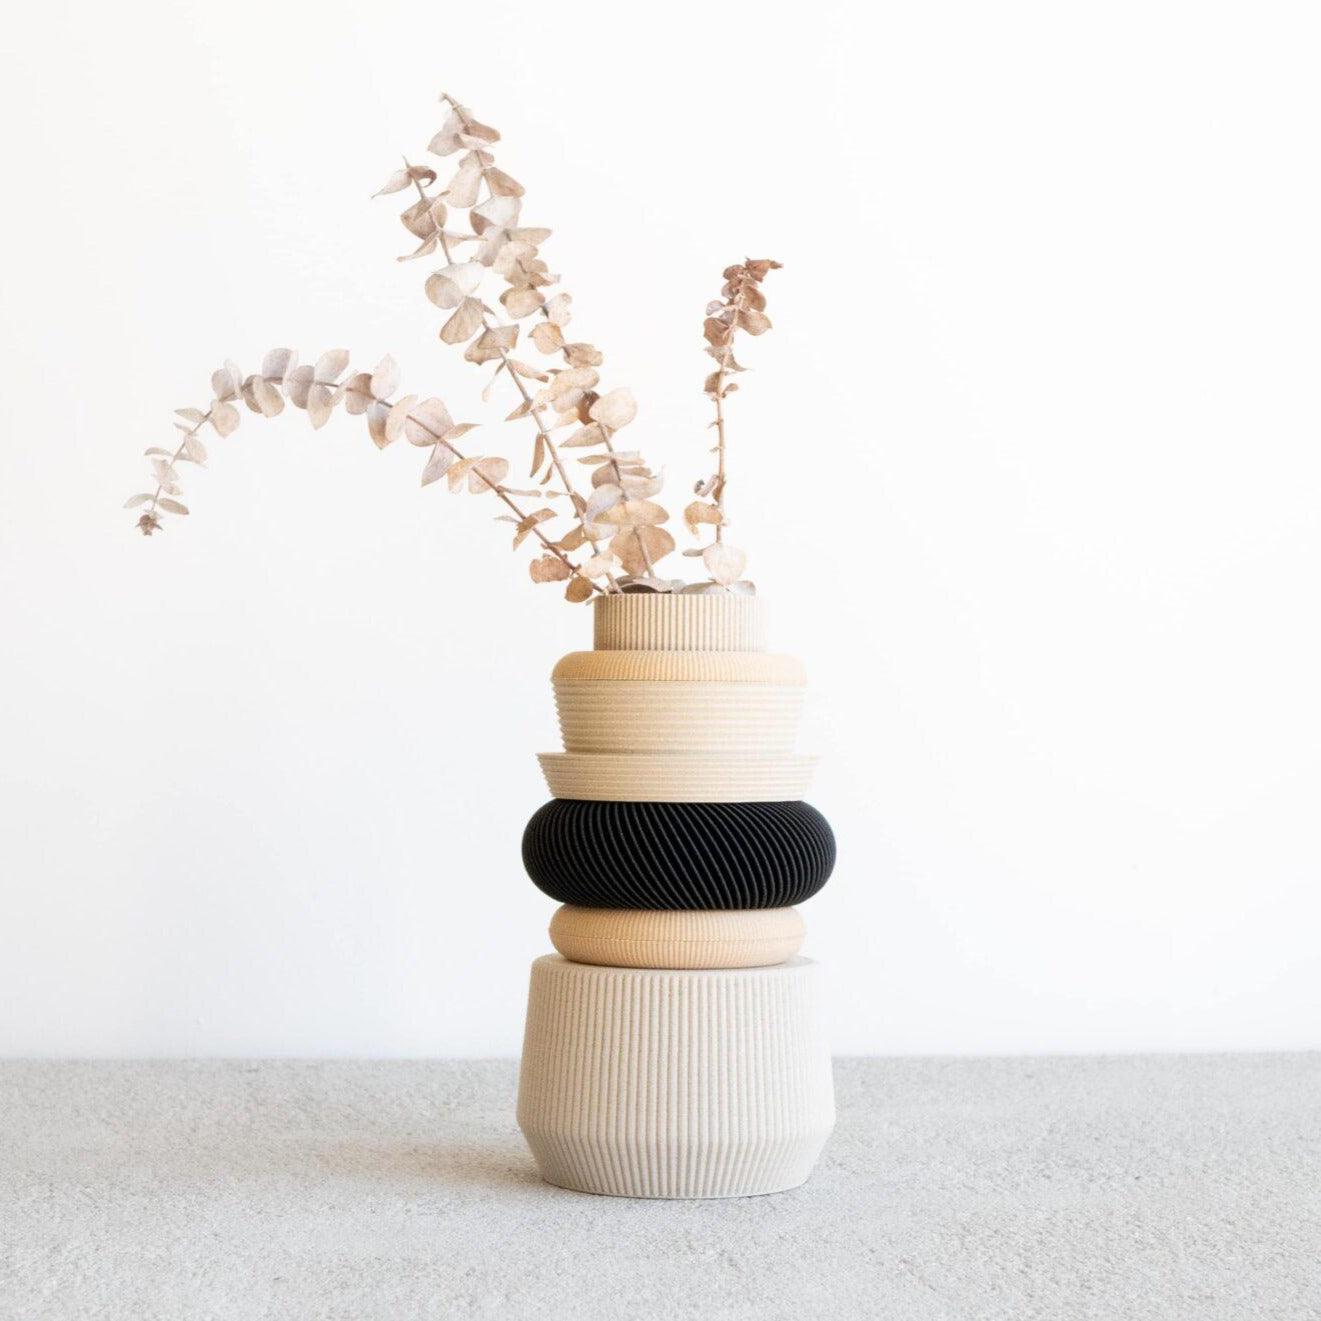 VENICE Modular Vase - Minimum Design 